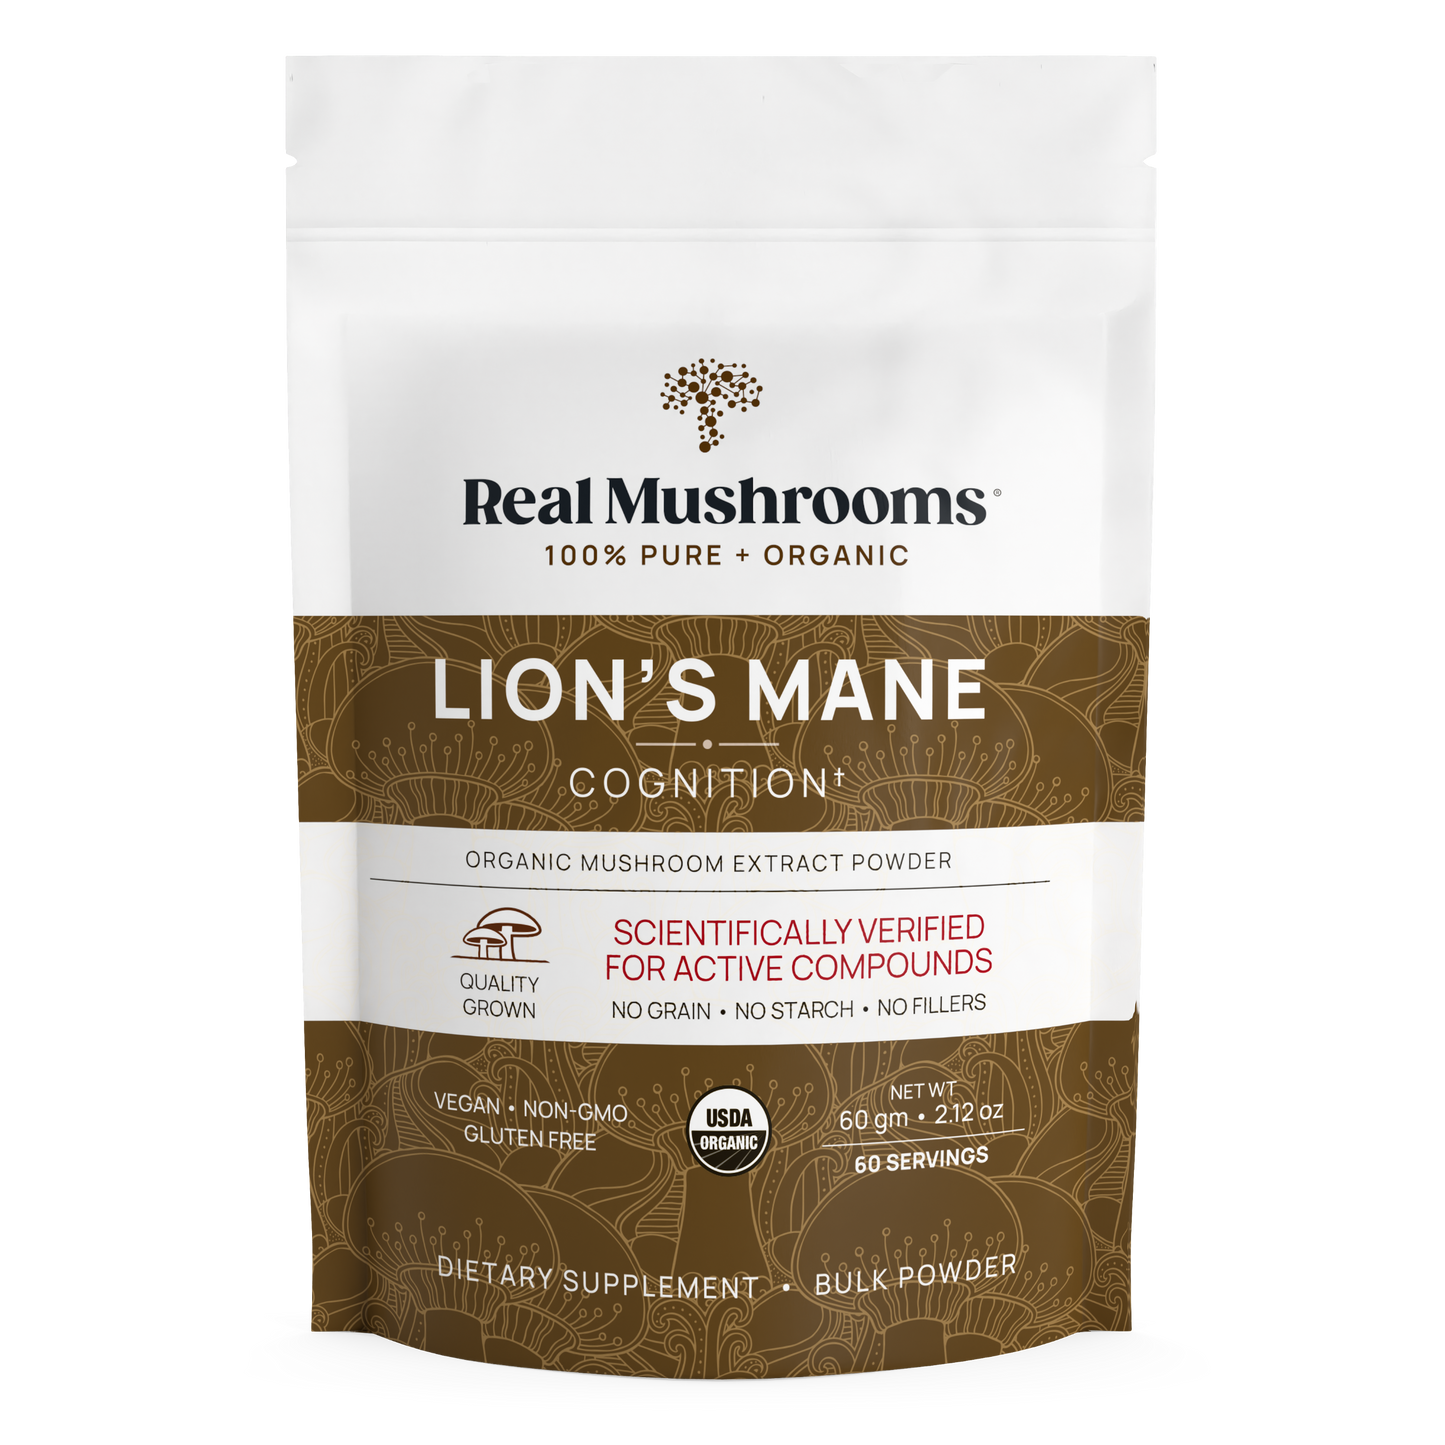 Real Mushrooms' Organic Lions Mane Mushroom Powder for Pets.